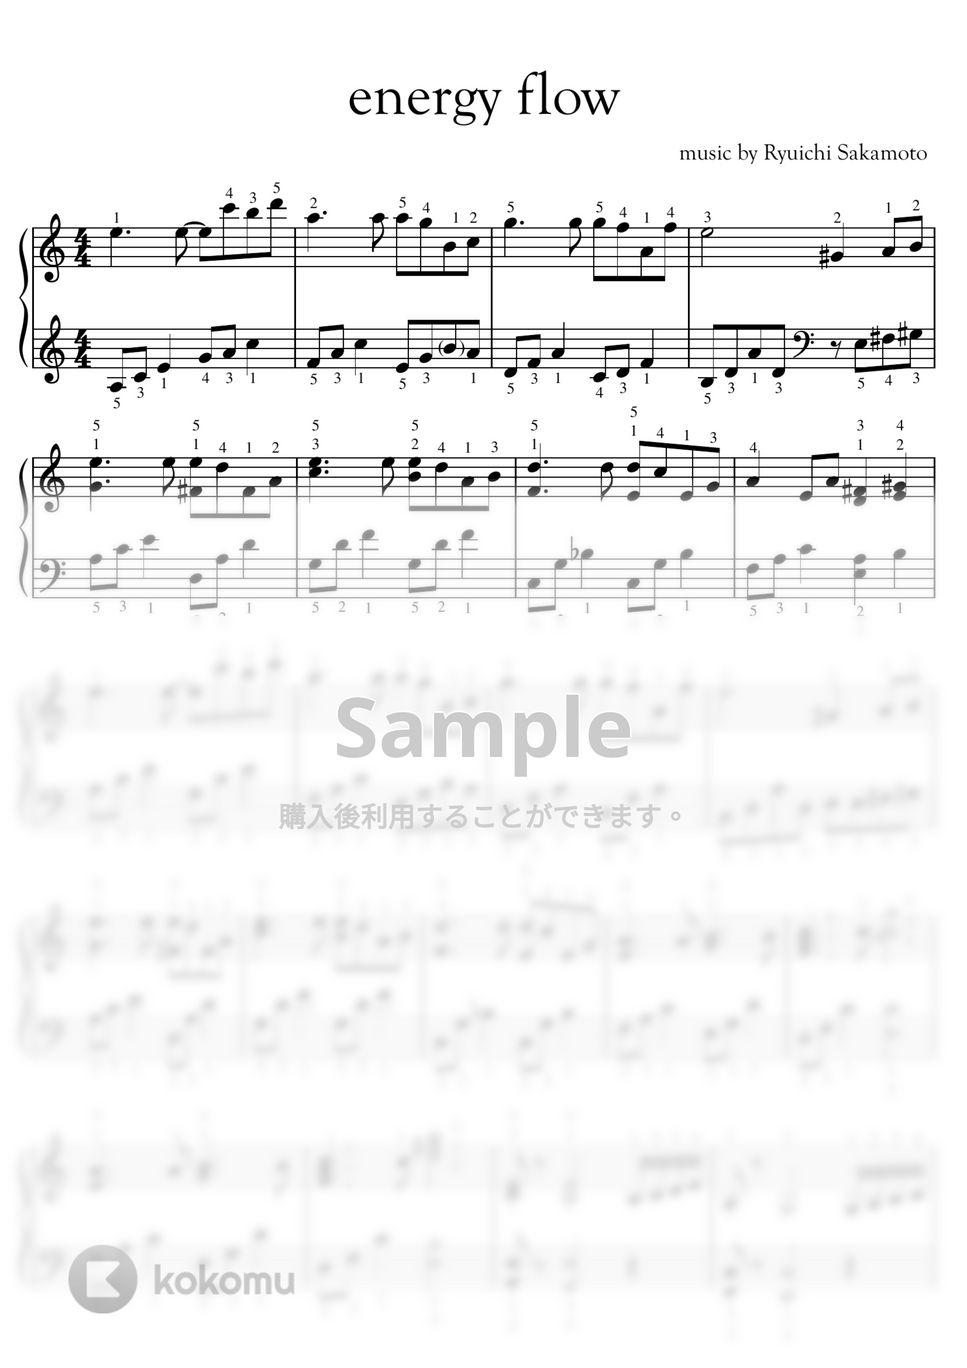 坂本龍一 ピアノ楽譜 - スコア/楽譜